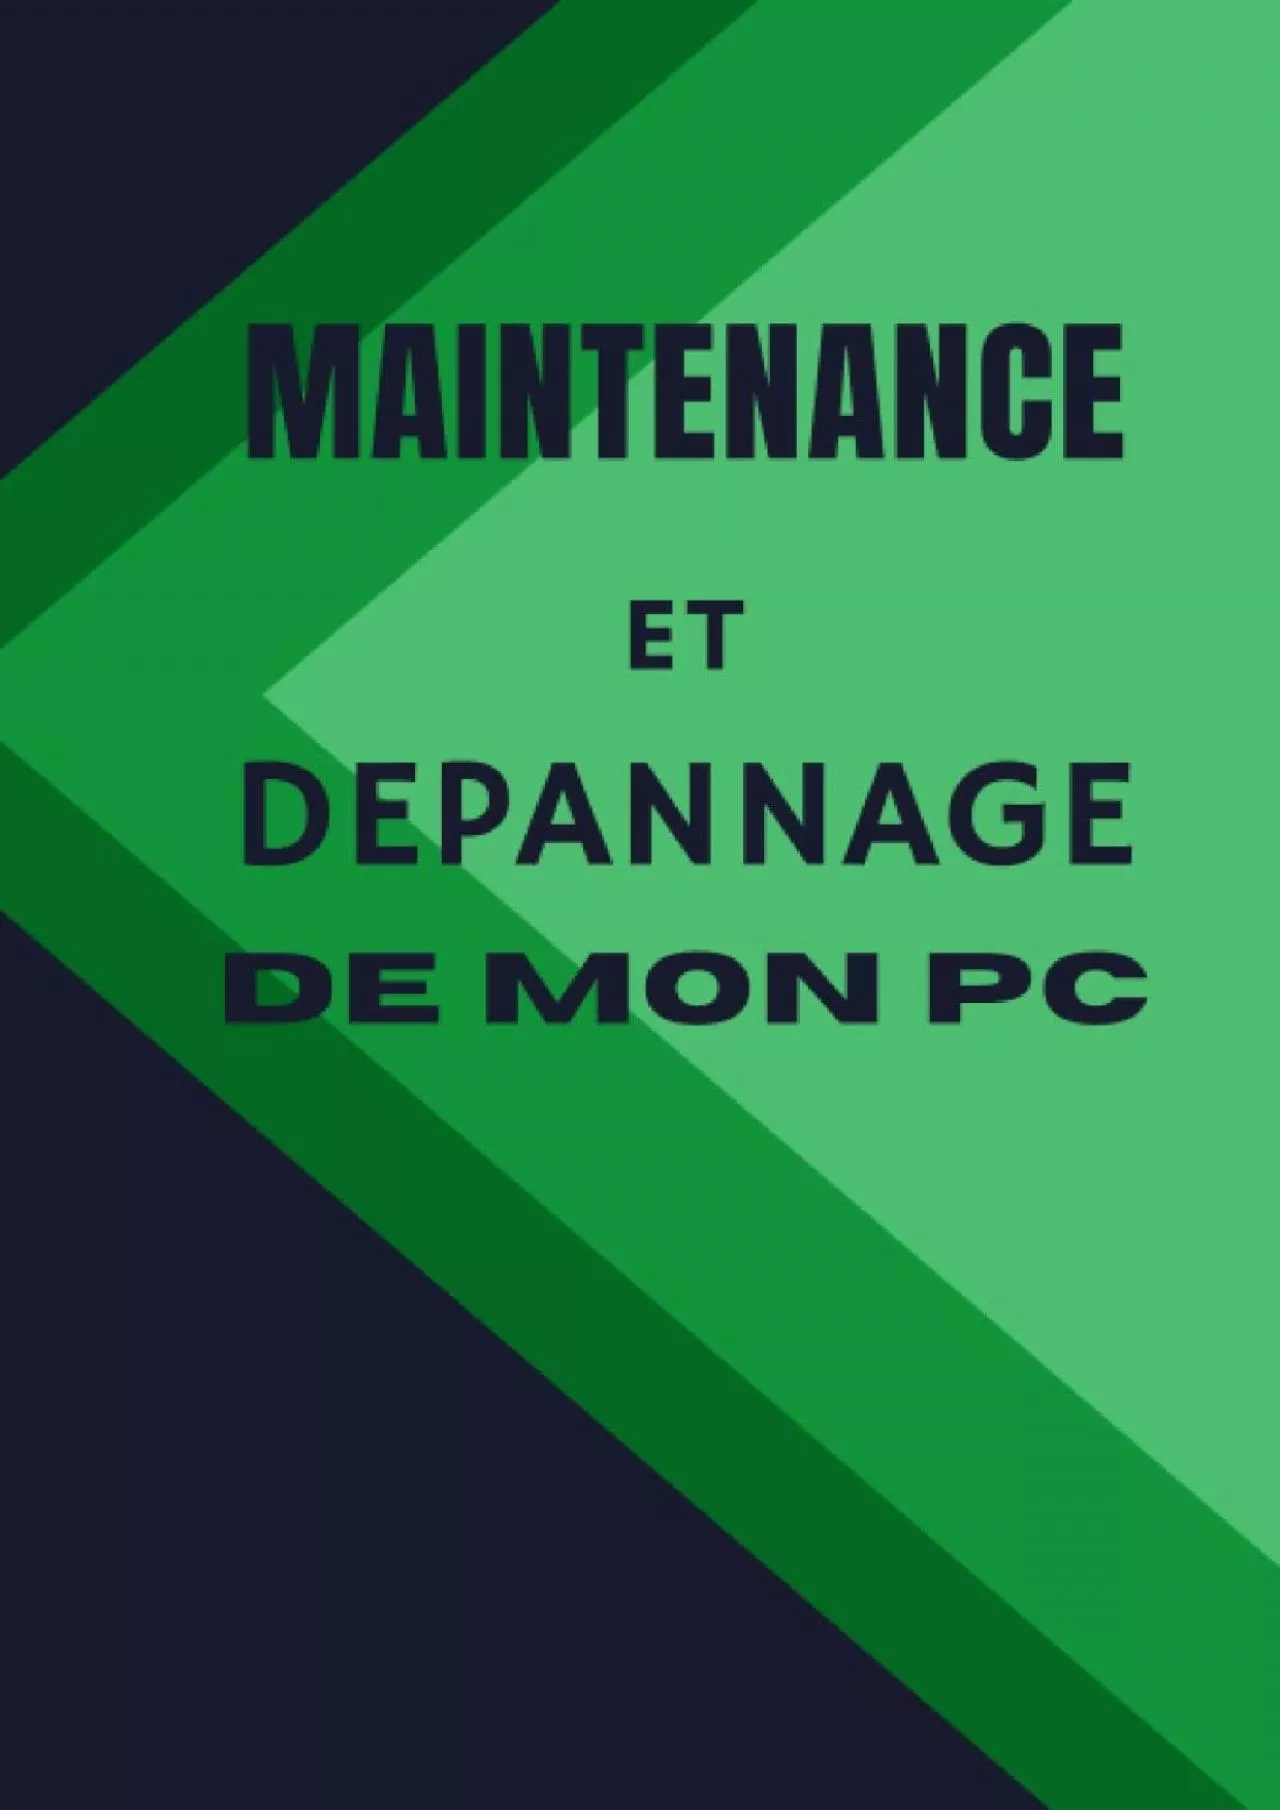 [FREE]-Maintenance et nettoyage de pc (French Edition)